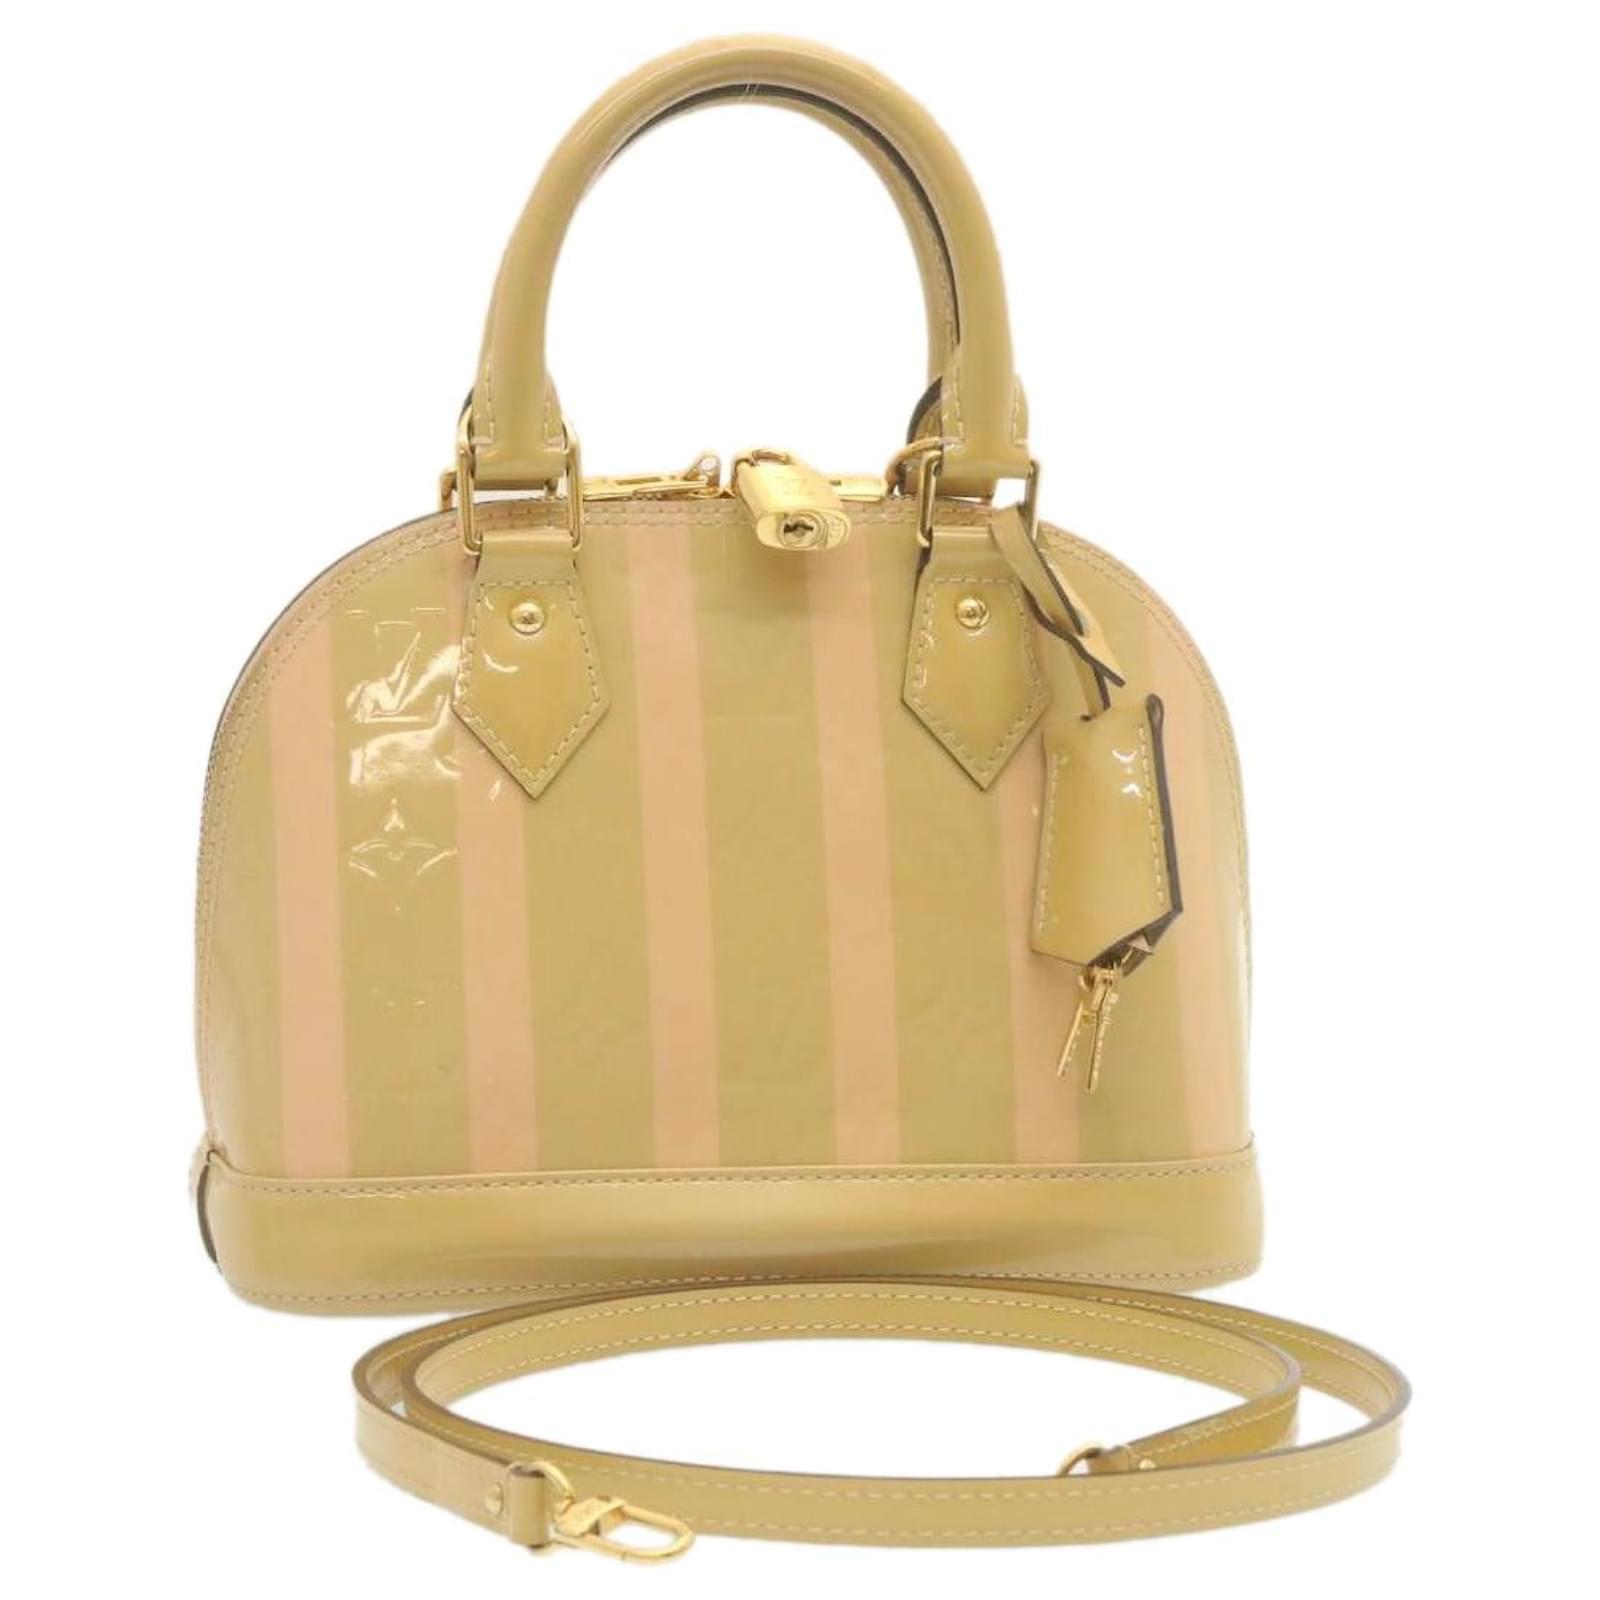 Alma velvet handbag Louis Vuitton Pink in Velvet - 34900580